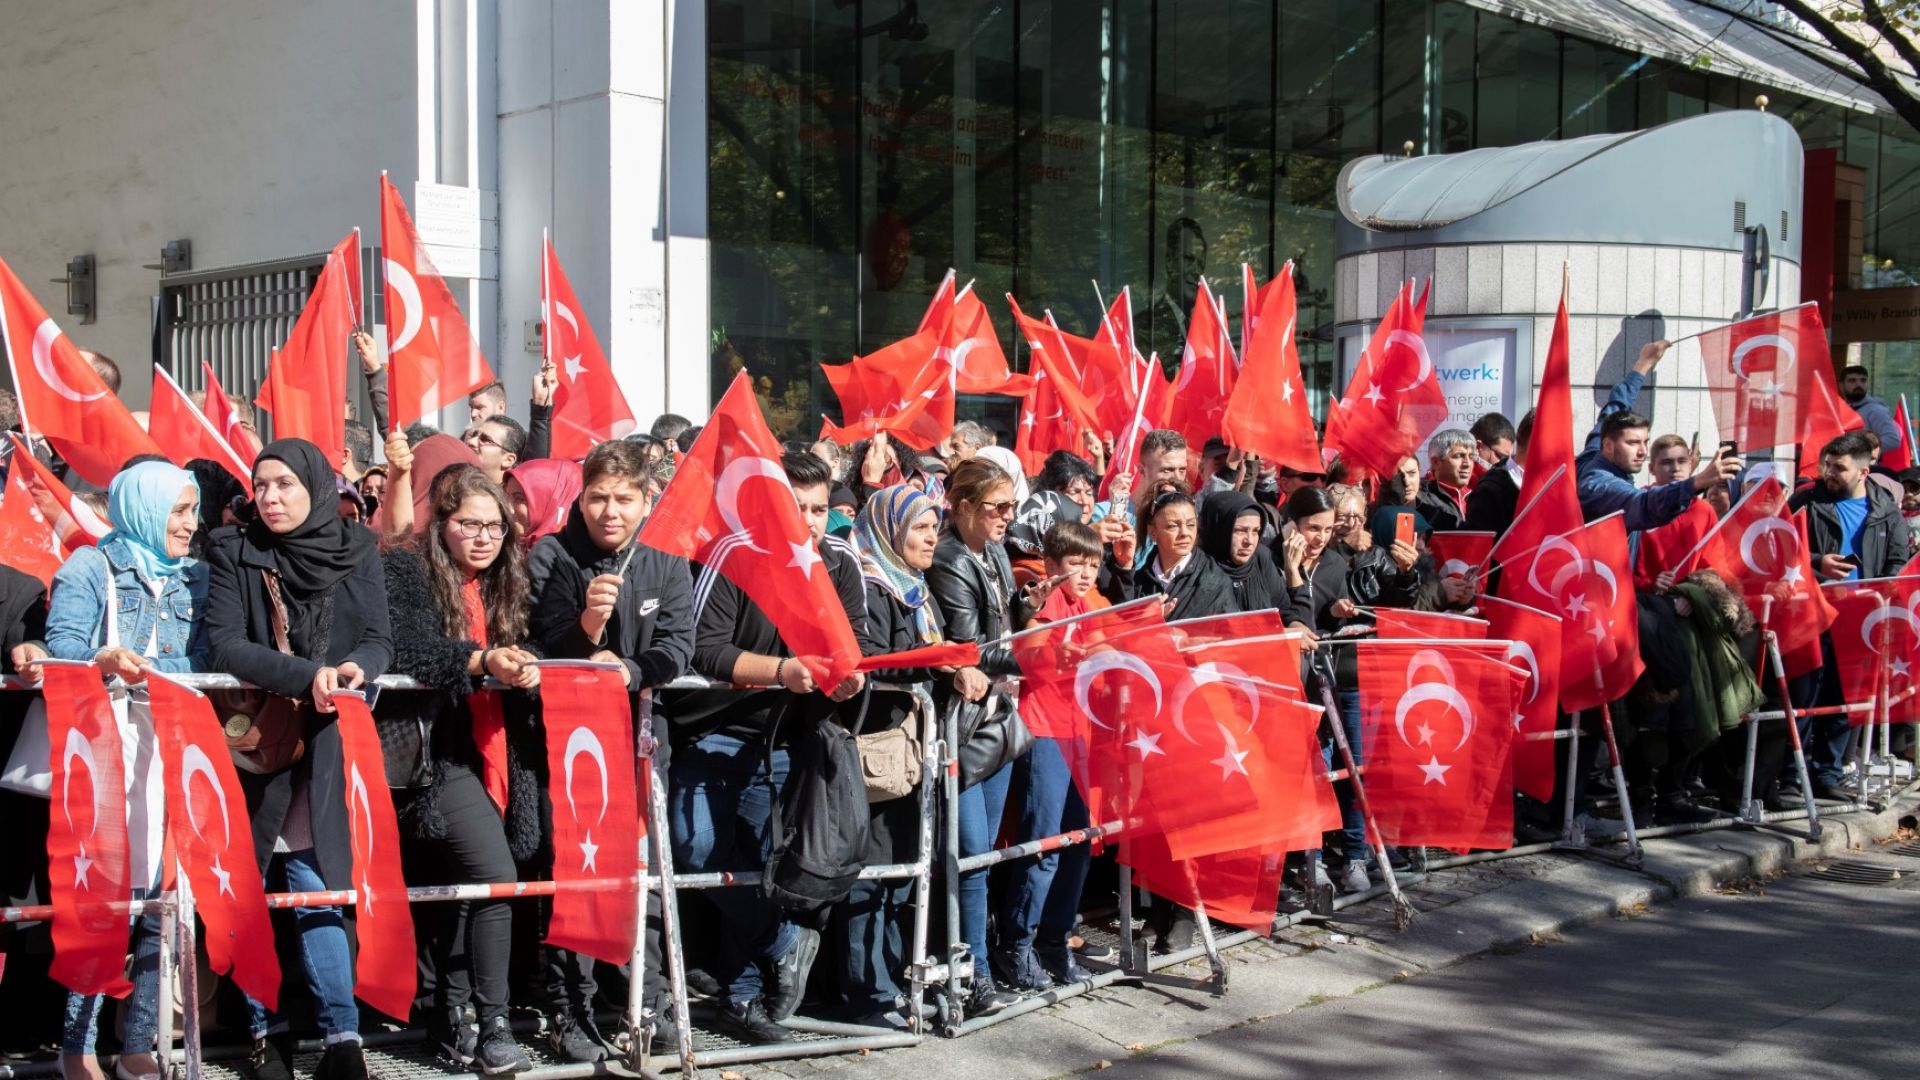 Ердоган пристигна в Берлин, турски фенове го посрещнаха със знамена